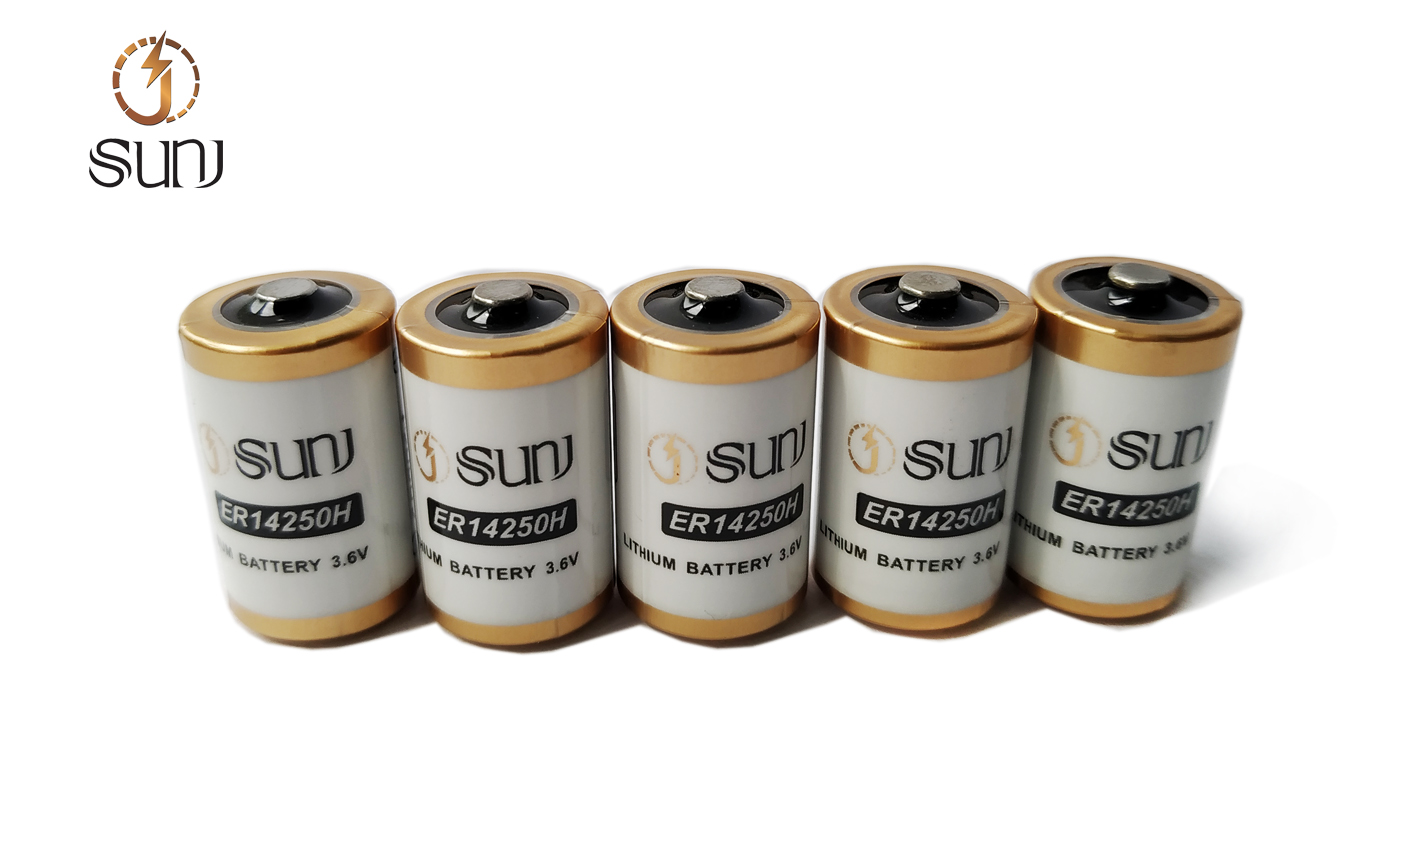 SUNJ 3.6V锂电池 ER14250H图片